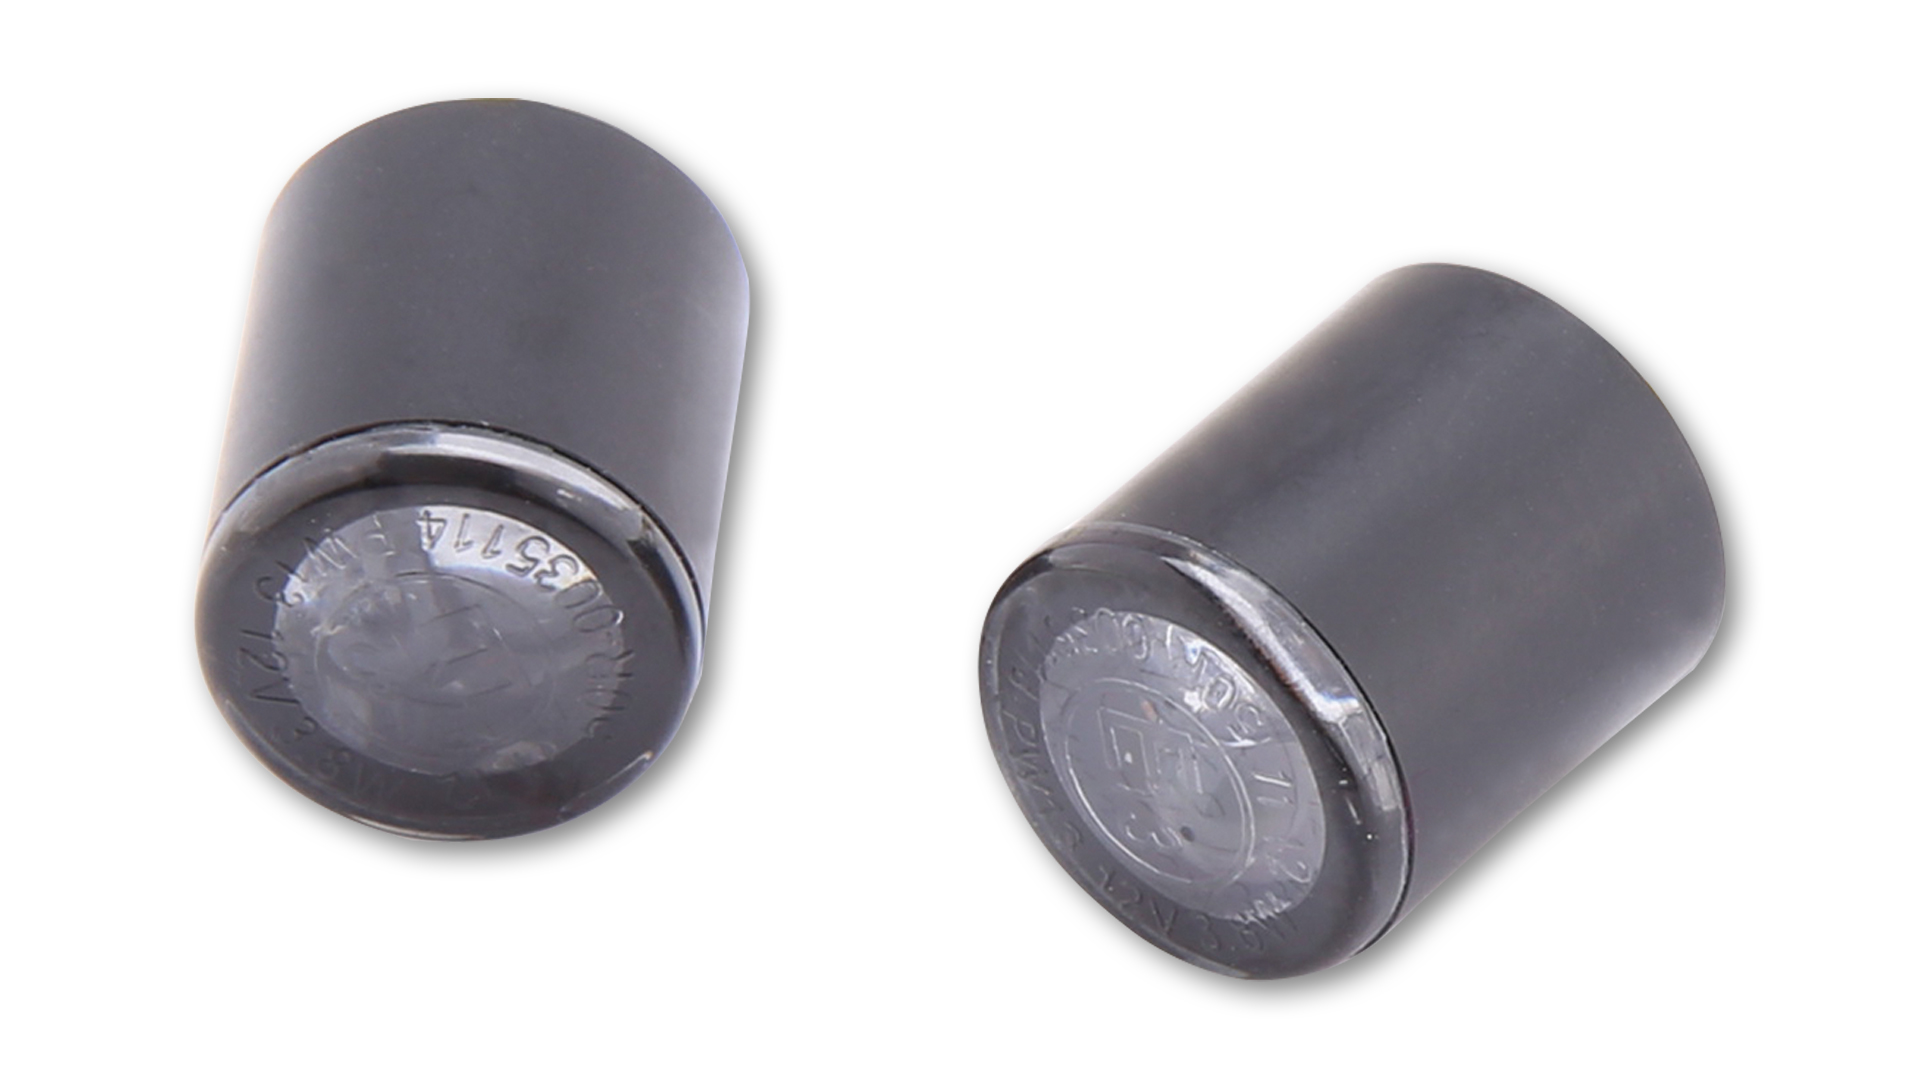 HIGHSIDER PROTON Modul LED Blinker, getöntes Glas, zum Einlaminieren oder Einkleben, E-geprüft, Paar.